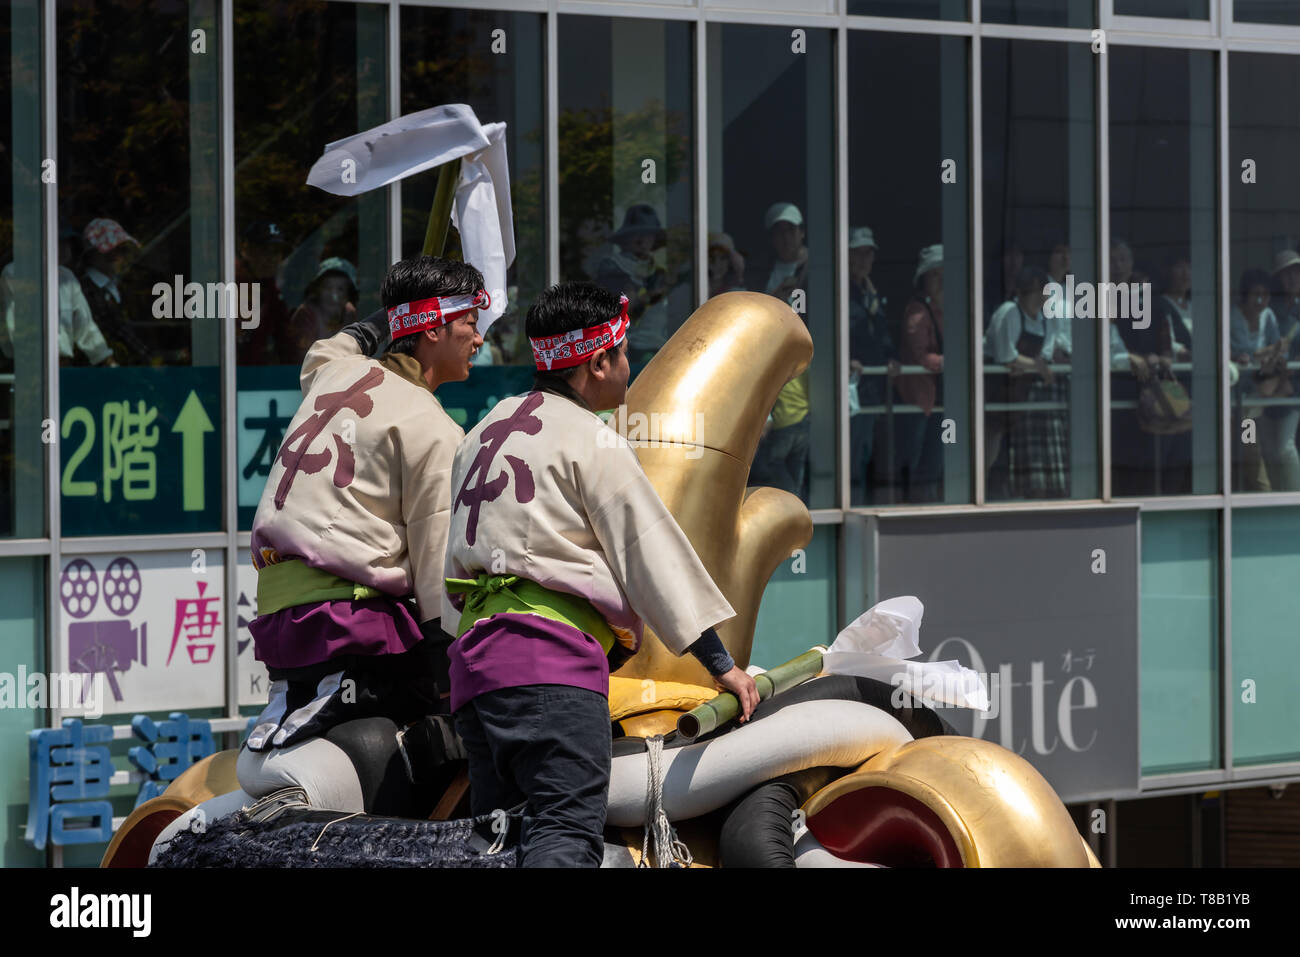 Volks, Japan - Mai 5, 2019: Zwei Männer tragen traditionelle Kleidung auf einem massiven Float bei neuen imperialen Ära sind Iwa' Feier Parade Stockfoto